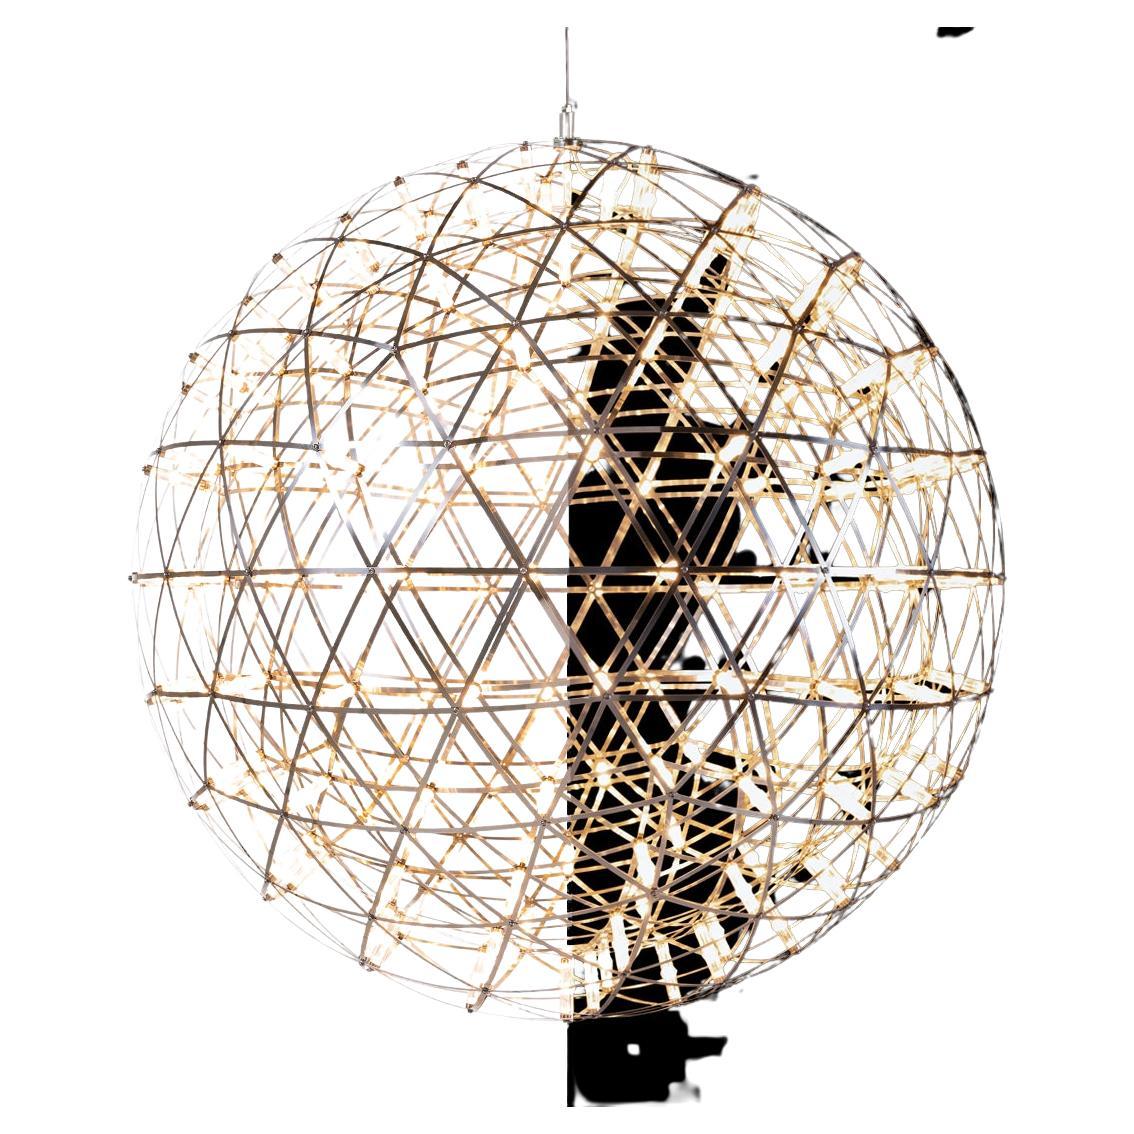 Die Raimond-Kuppel besteht aus denselben mathematischen Zutaten wie ihre kugelförmigen Familienmitglieder. Ebenfalls von winzigen LED-Lichtern unterbrochen, aber mit einer starken Lichtquelle in der Mitte verstärkt. Der Blick in den Raimond Dome